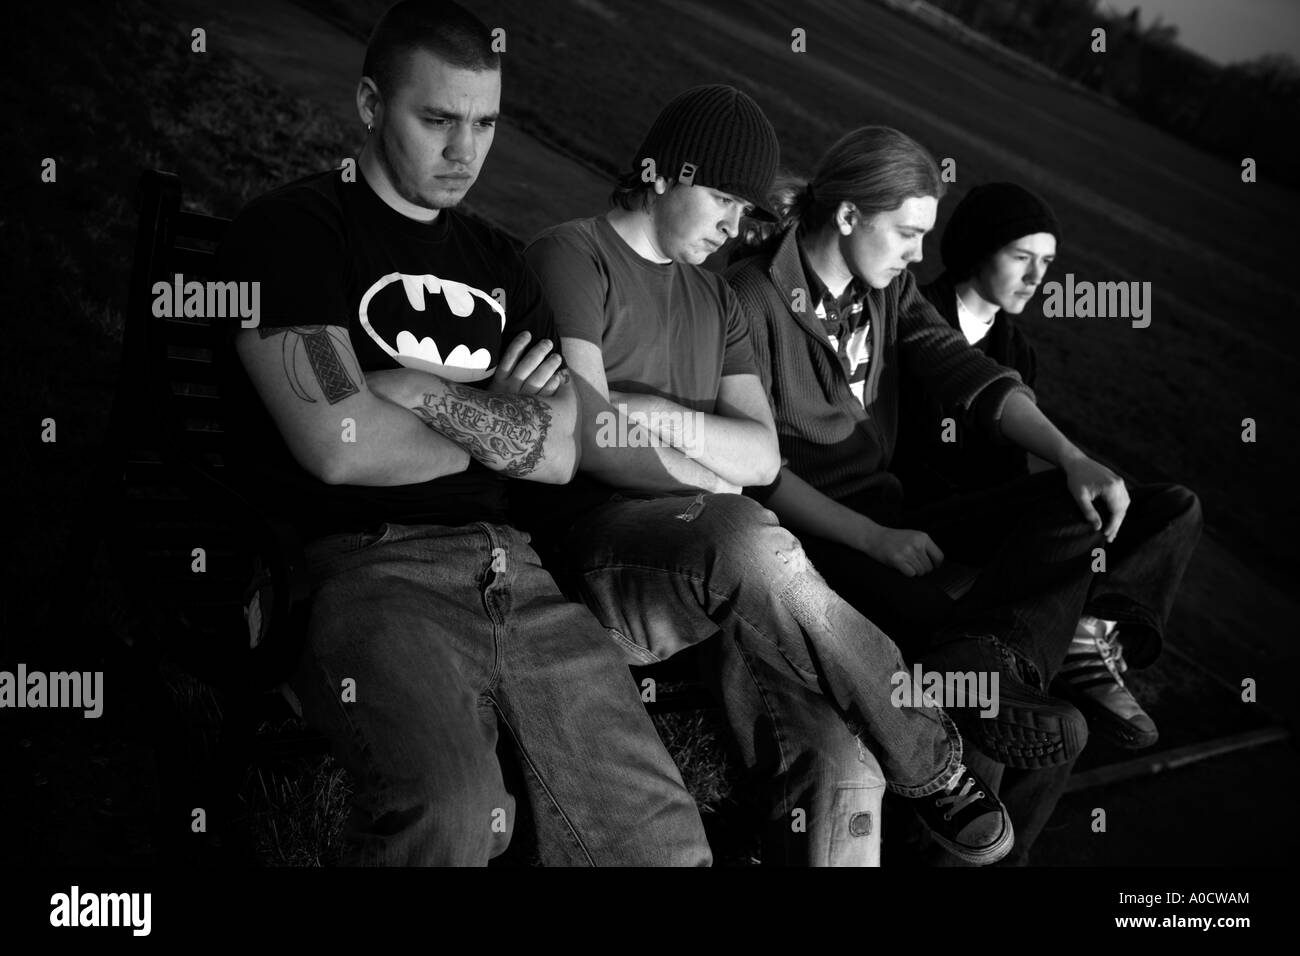 Immagine MONO di quattro giovani annoiati Foto Stock